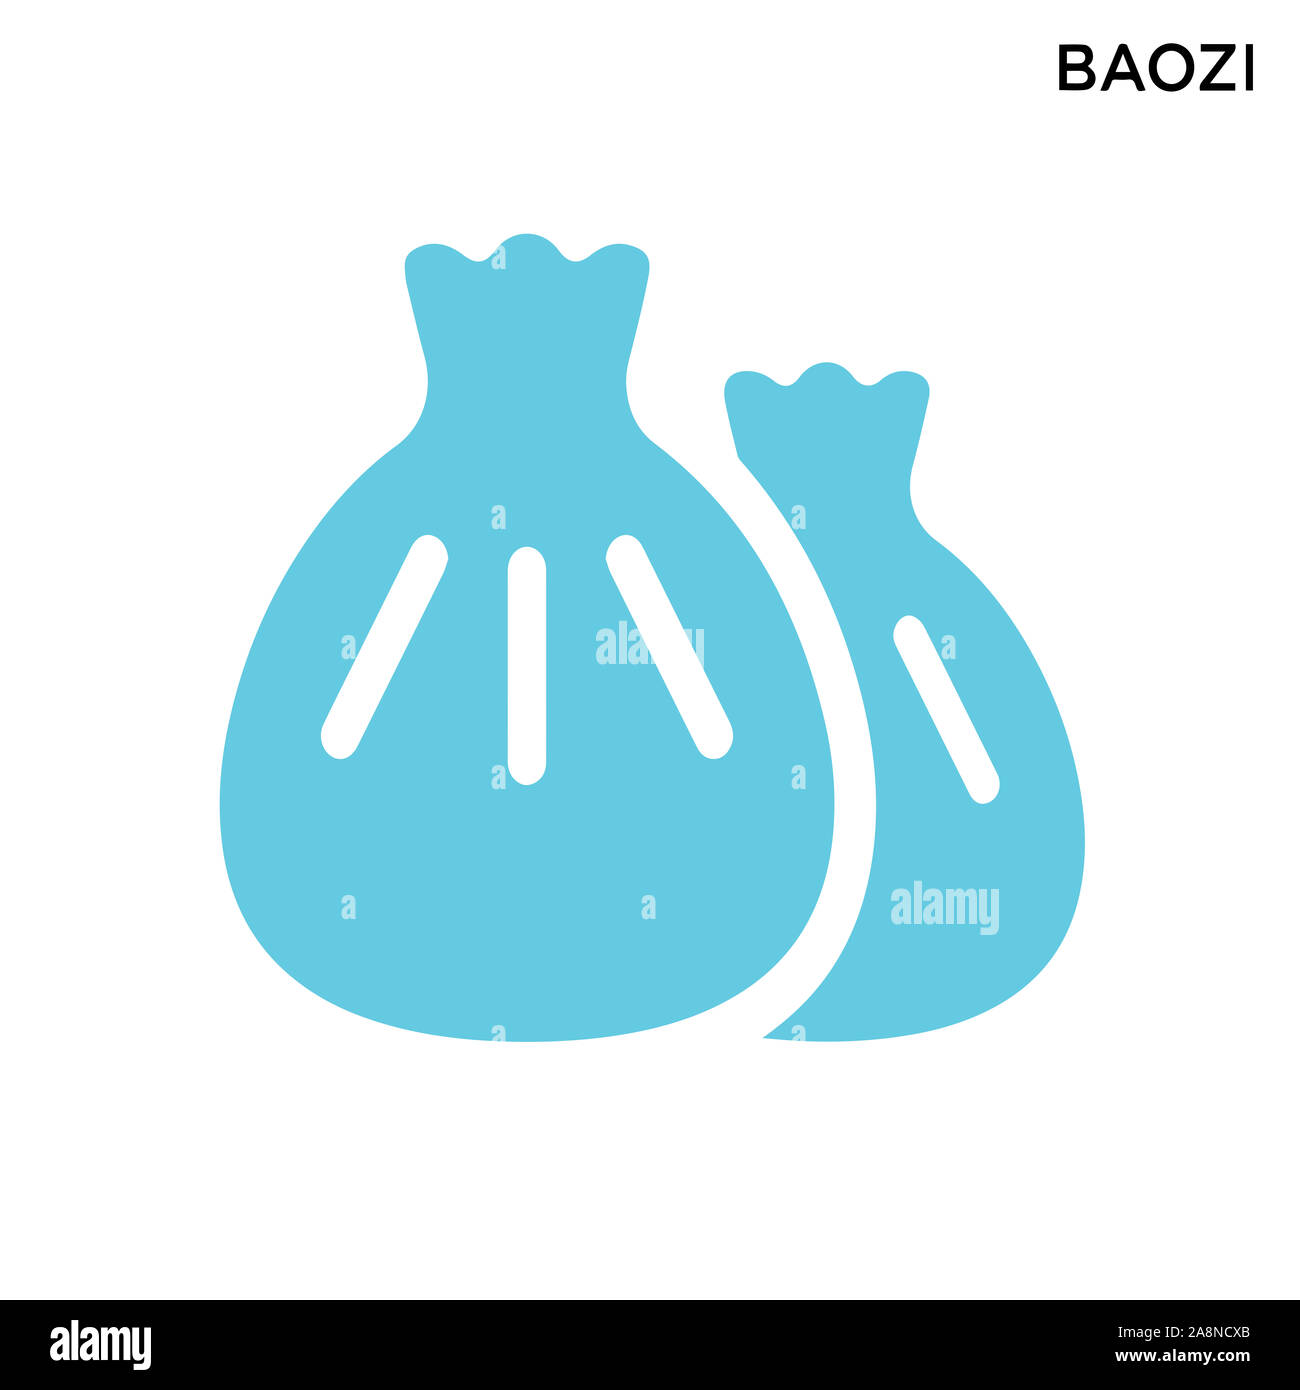 Baozi icona sfondo bianco semplice elemento illustrazione food concept Foto Stock